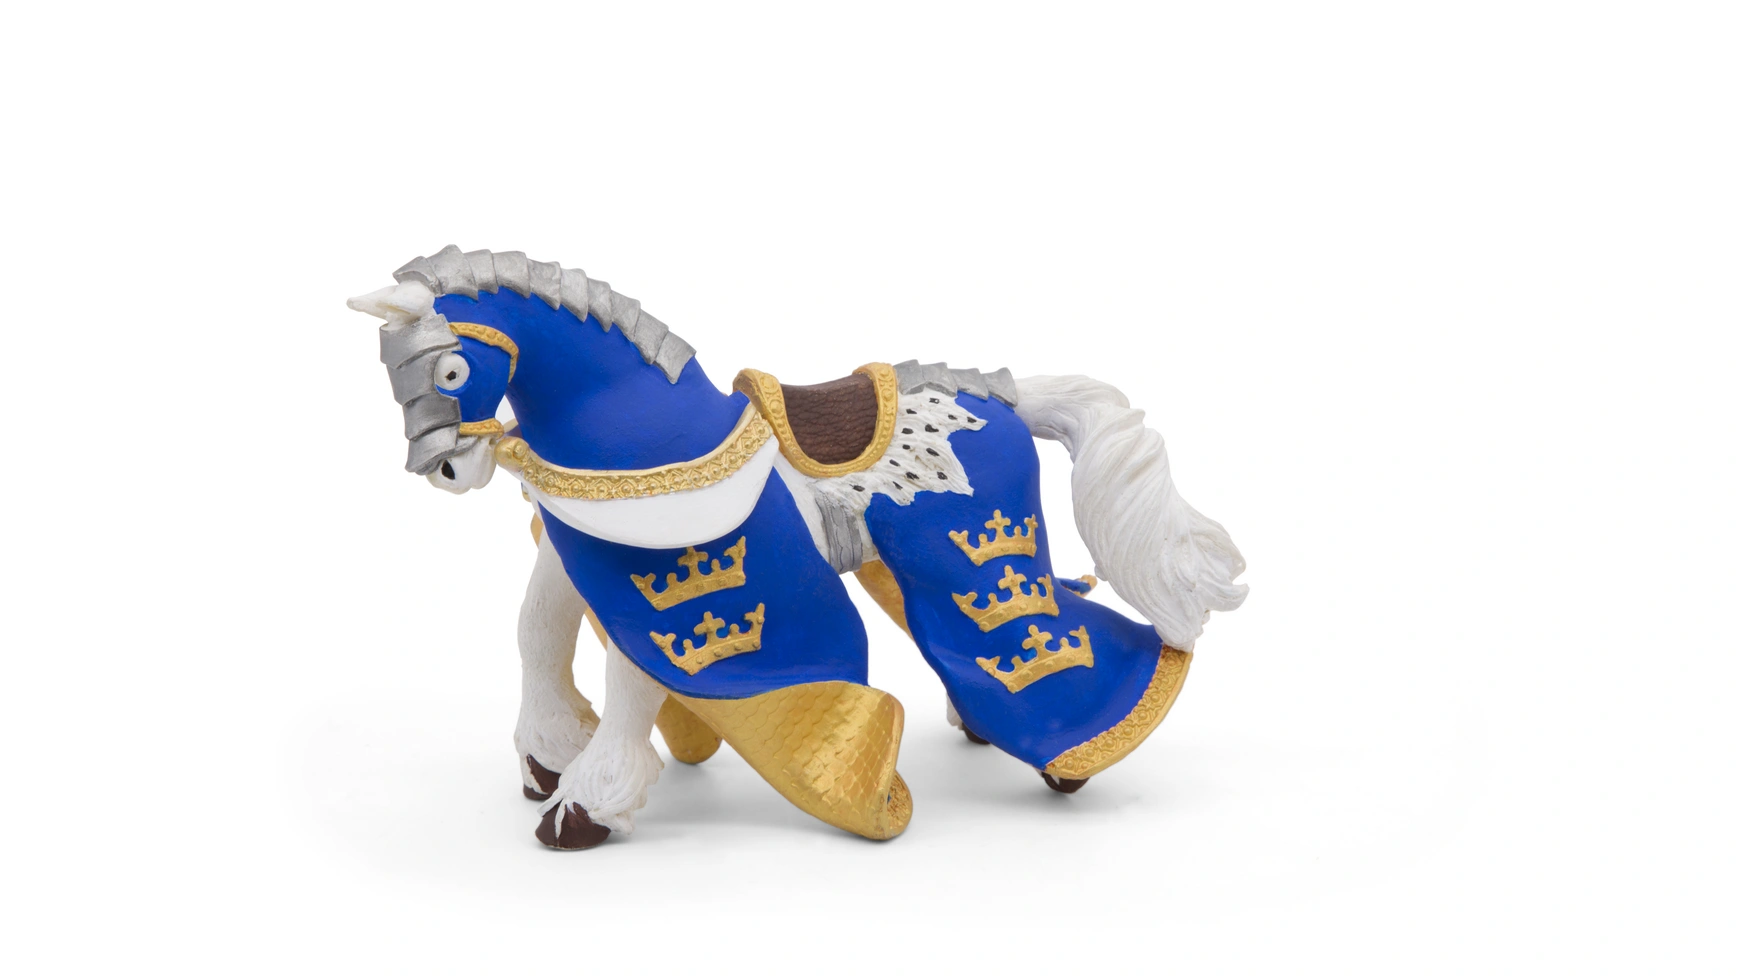 papo коллекционная фигурка серия рыцари турнирная лошадь 39945 Синяя лошадь короля артура Papo